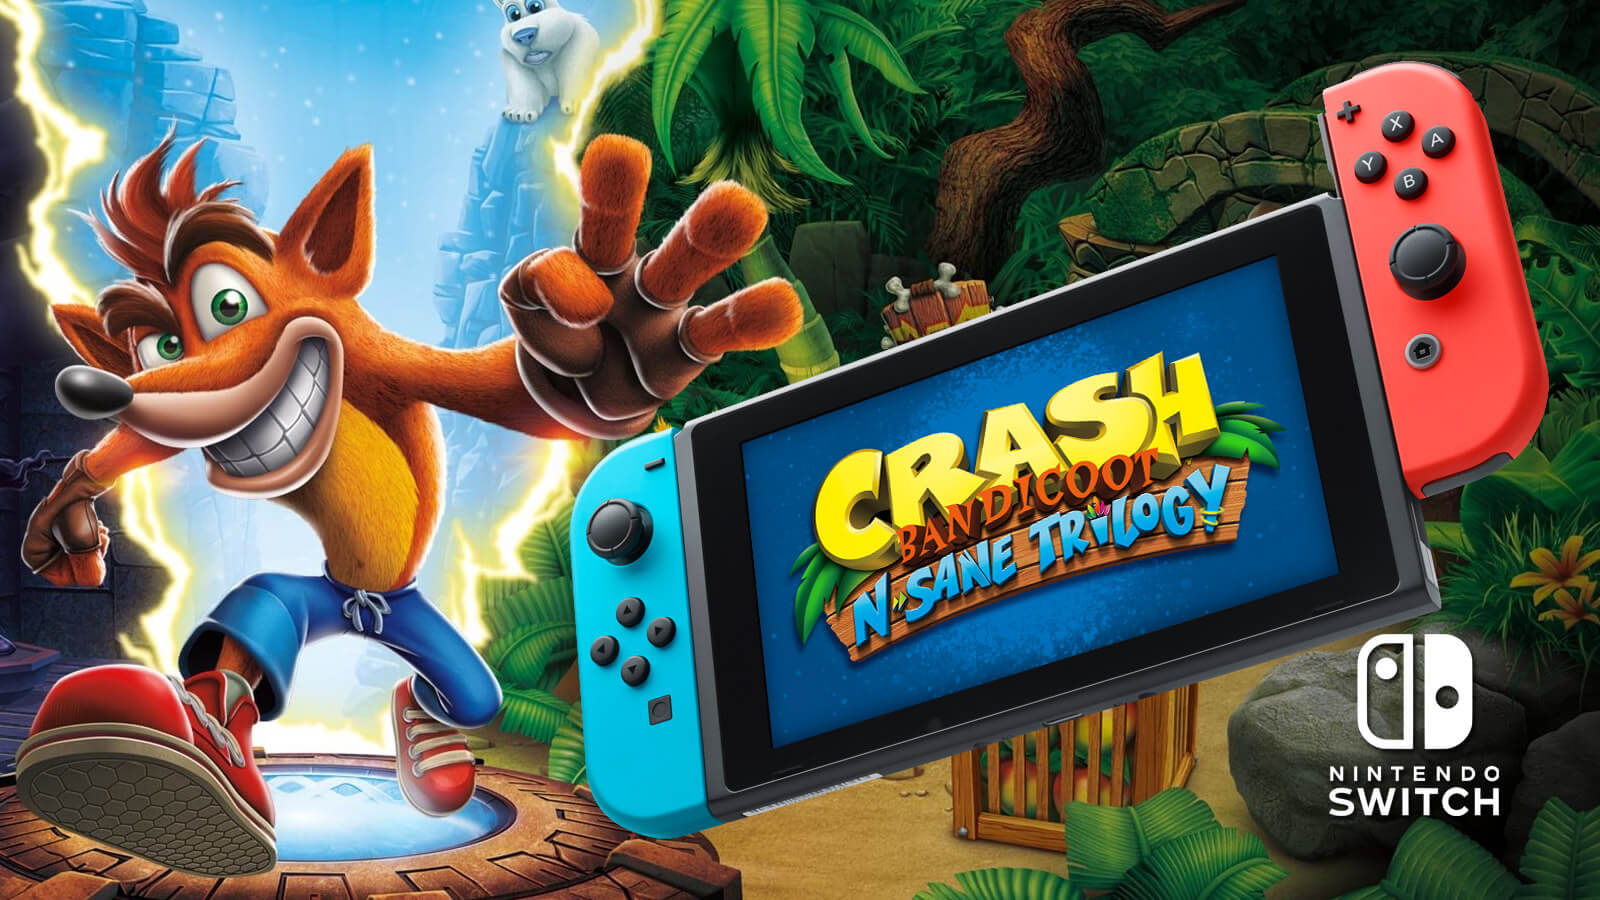 Crash Bandicoot N. Trilogy Coming to Nintendo